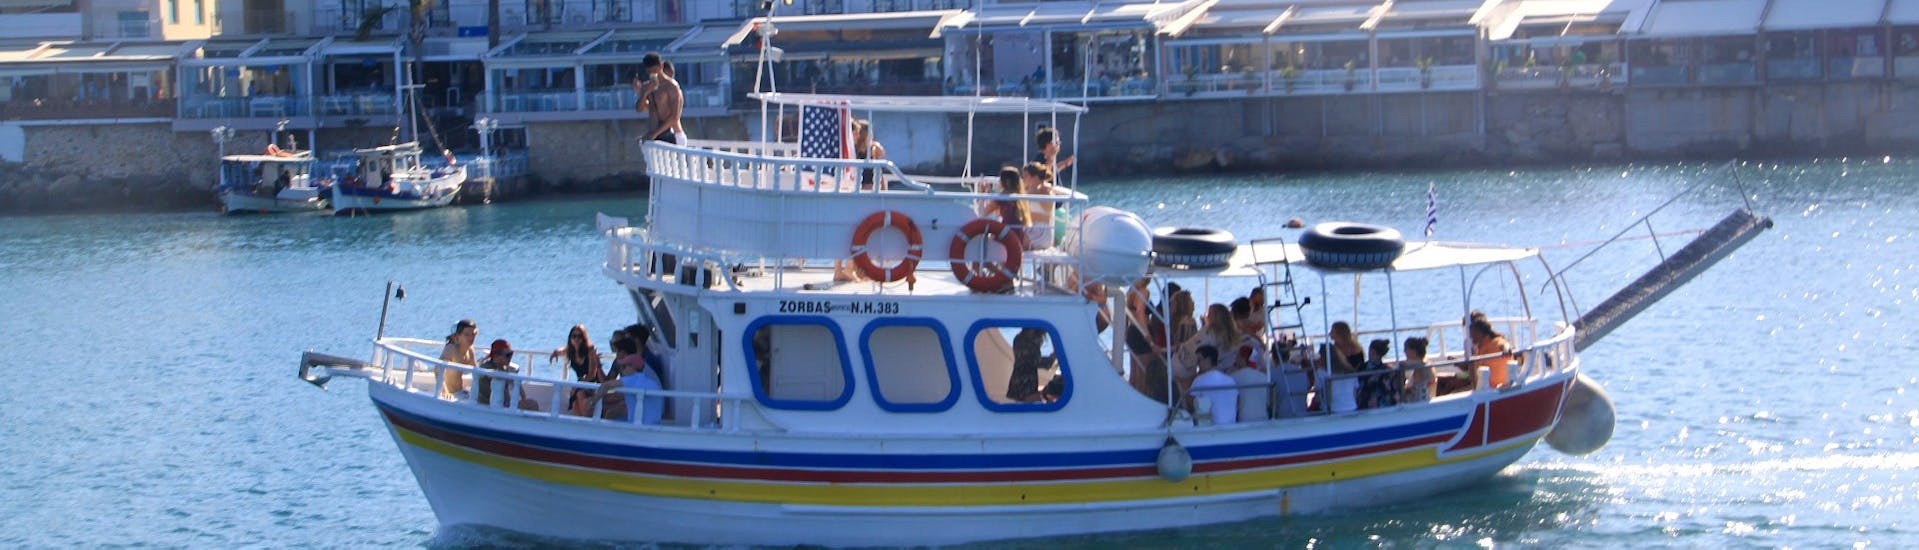 Das Boot steuert durch das klare Wasser während der Bootstour entlang der Küste zur Saint George's Bay